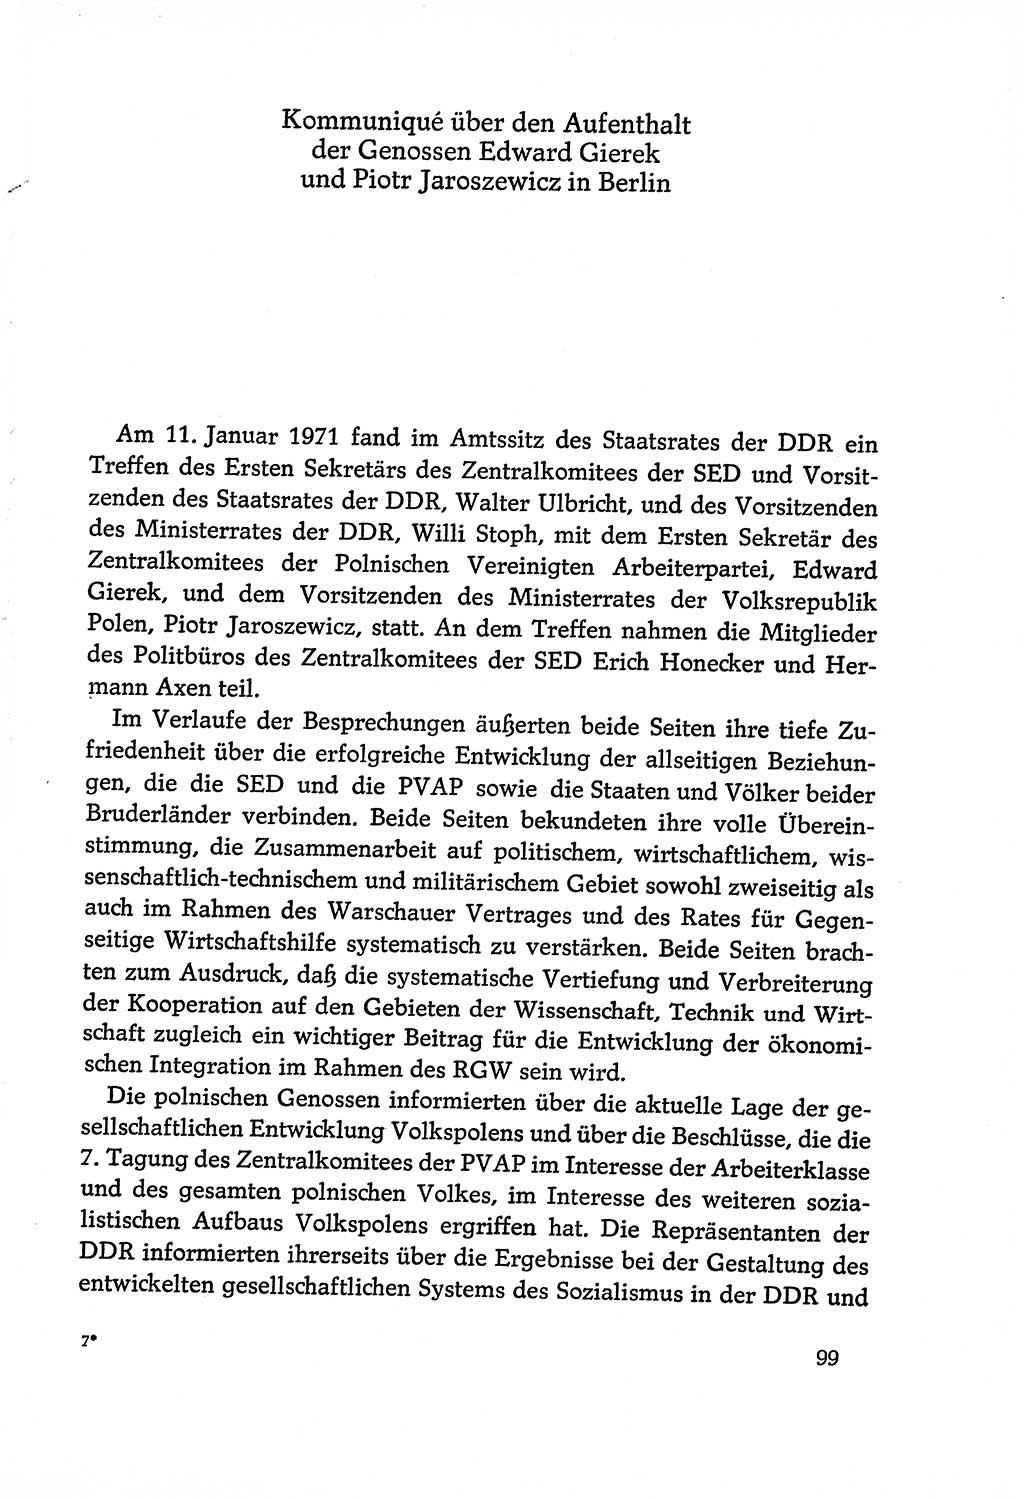 Dokumente der Sozialistischen Einheitspartei Deutschlands (SED) [Deutsche Demokratische Republik (DDR)] 1970-1971, Seite 99 (Dok. SED DDR 1970-1971, S. 99)